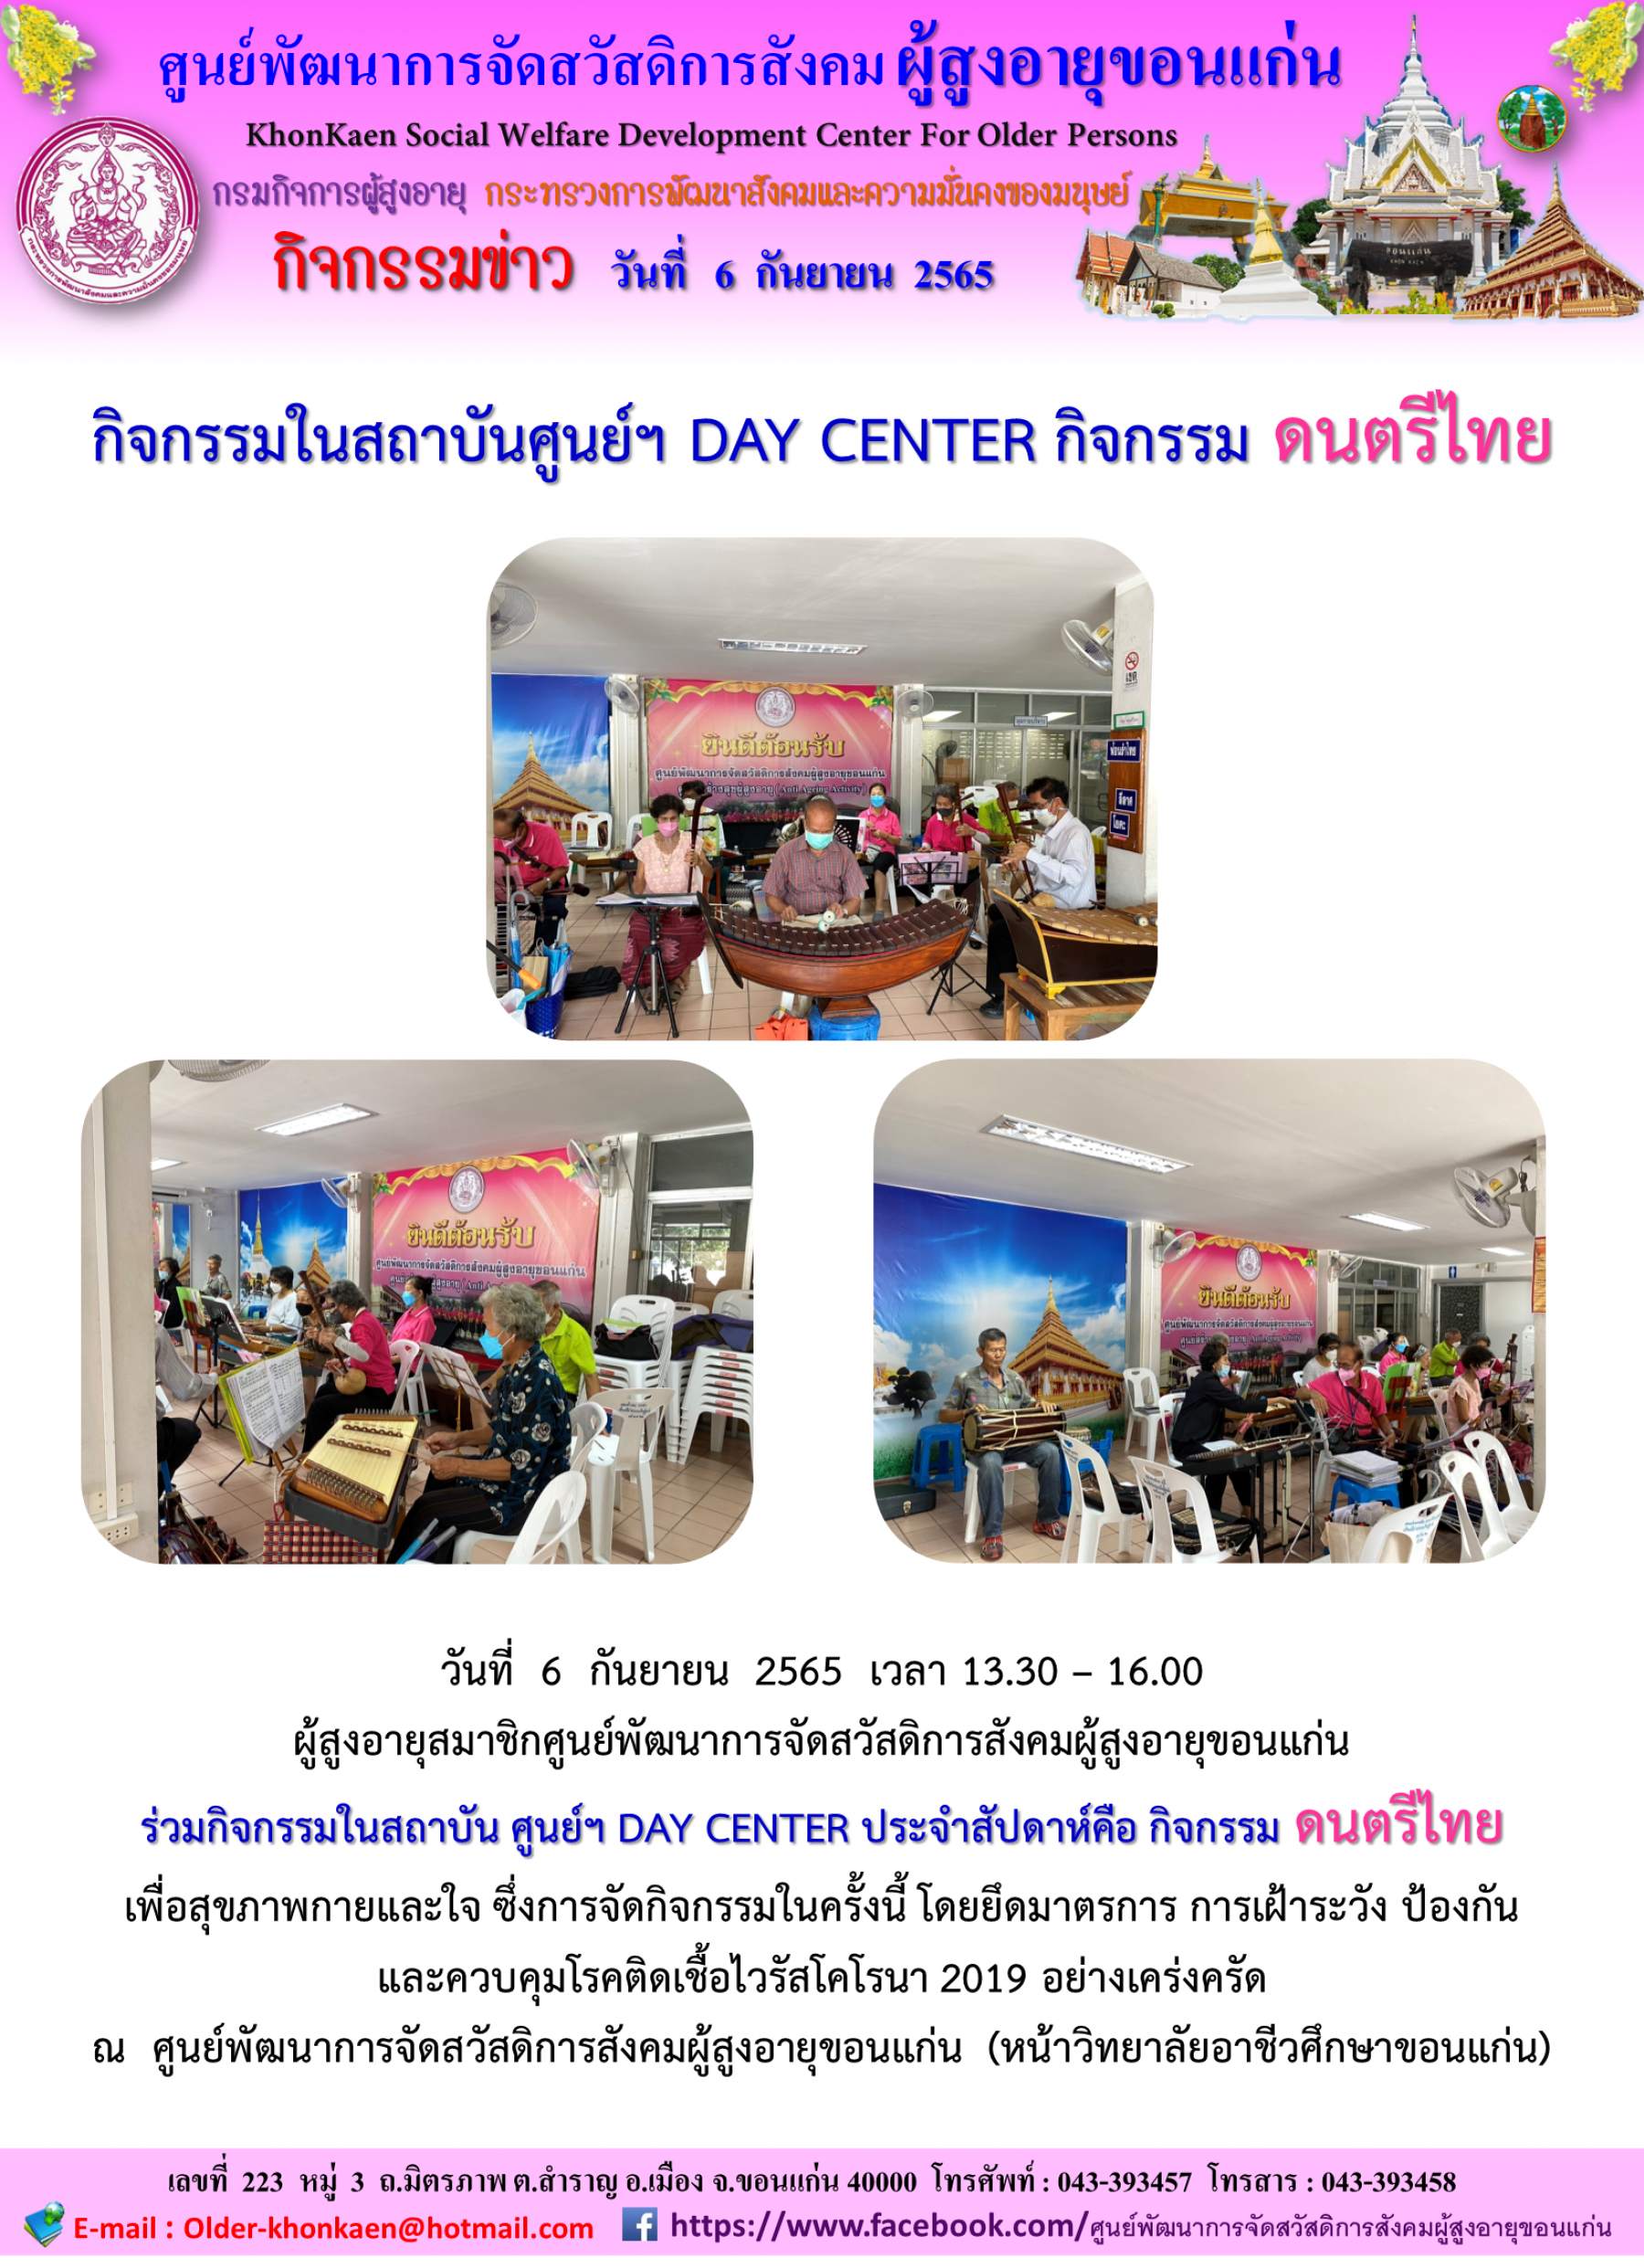 กิจกรรมในสถาบันศูนย์ฯ DAY CENTER กิจกรรมดนตรีไทย